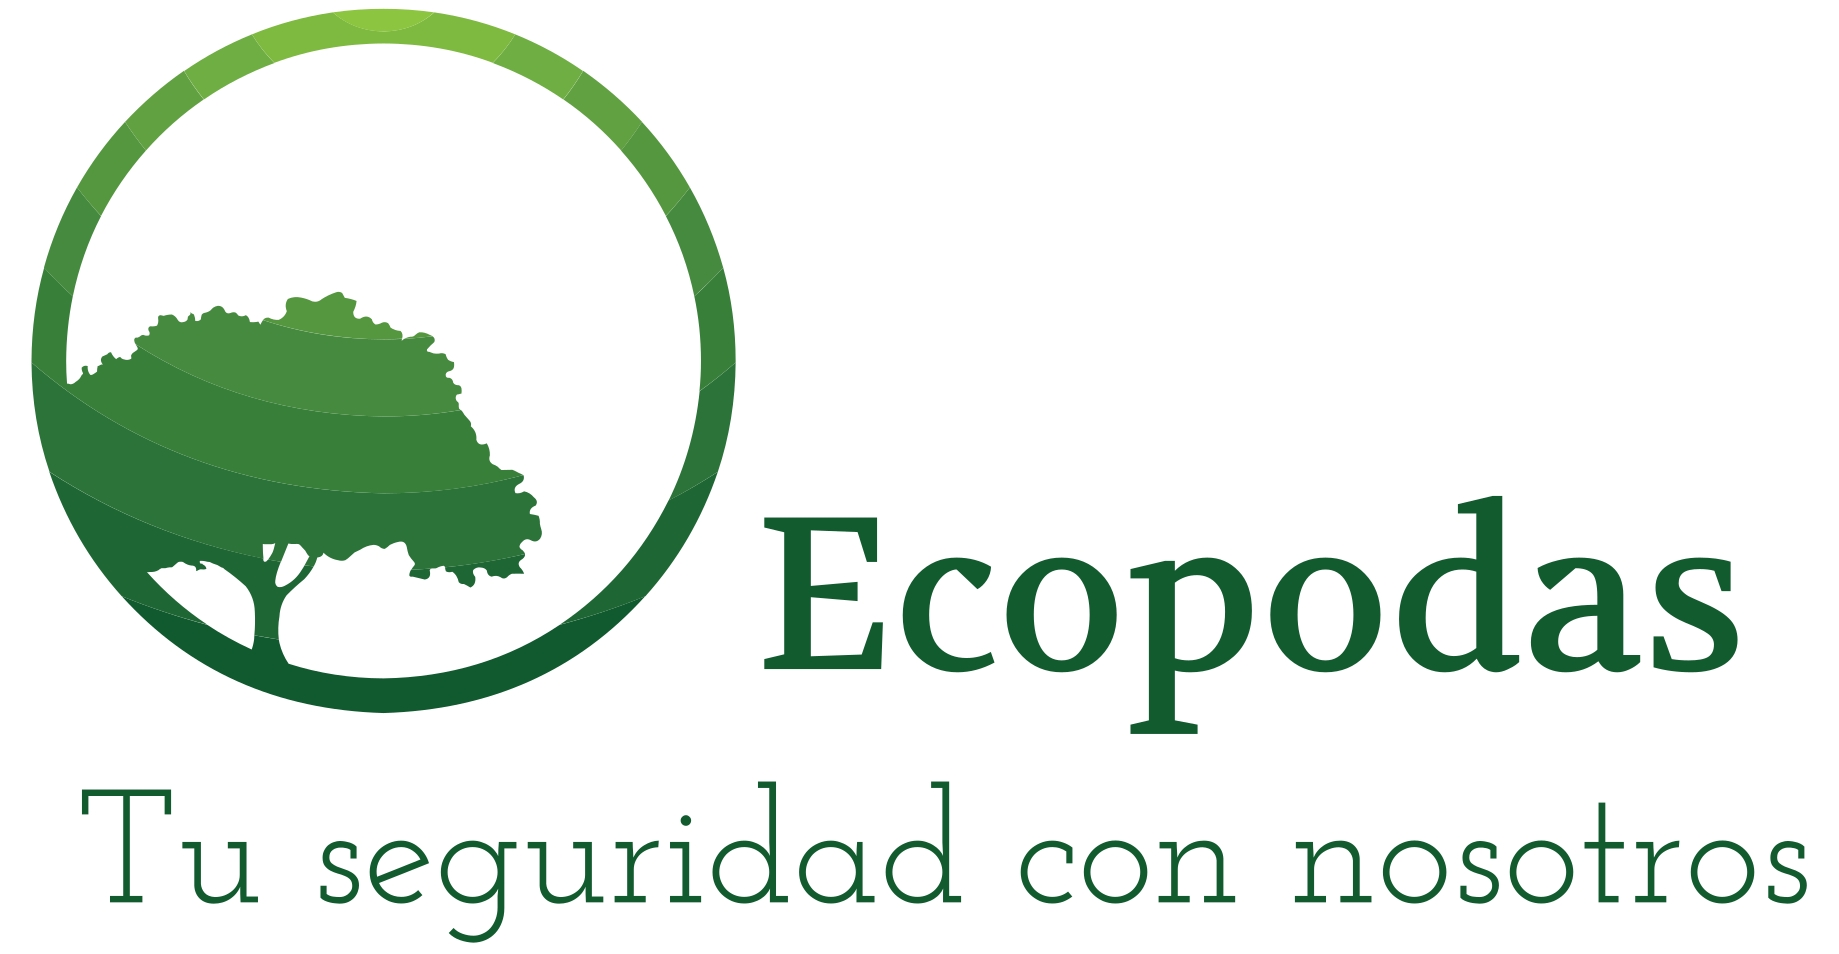 Ecopodas Uruguay